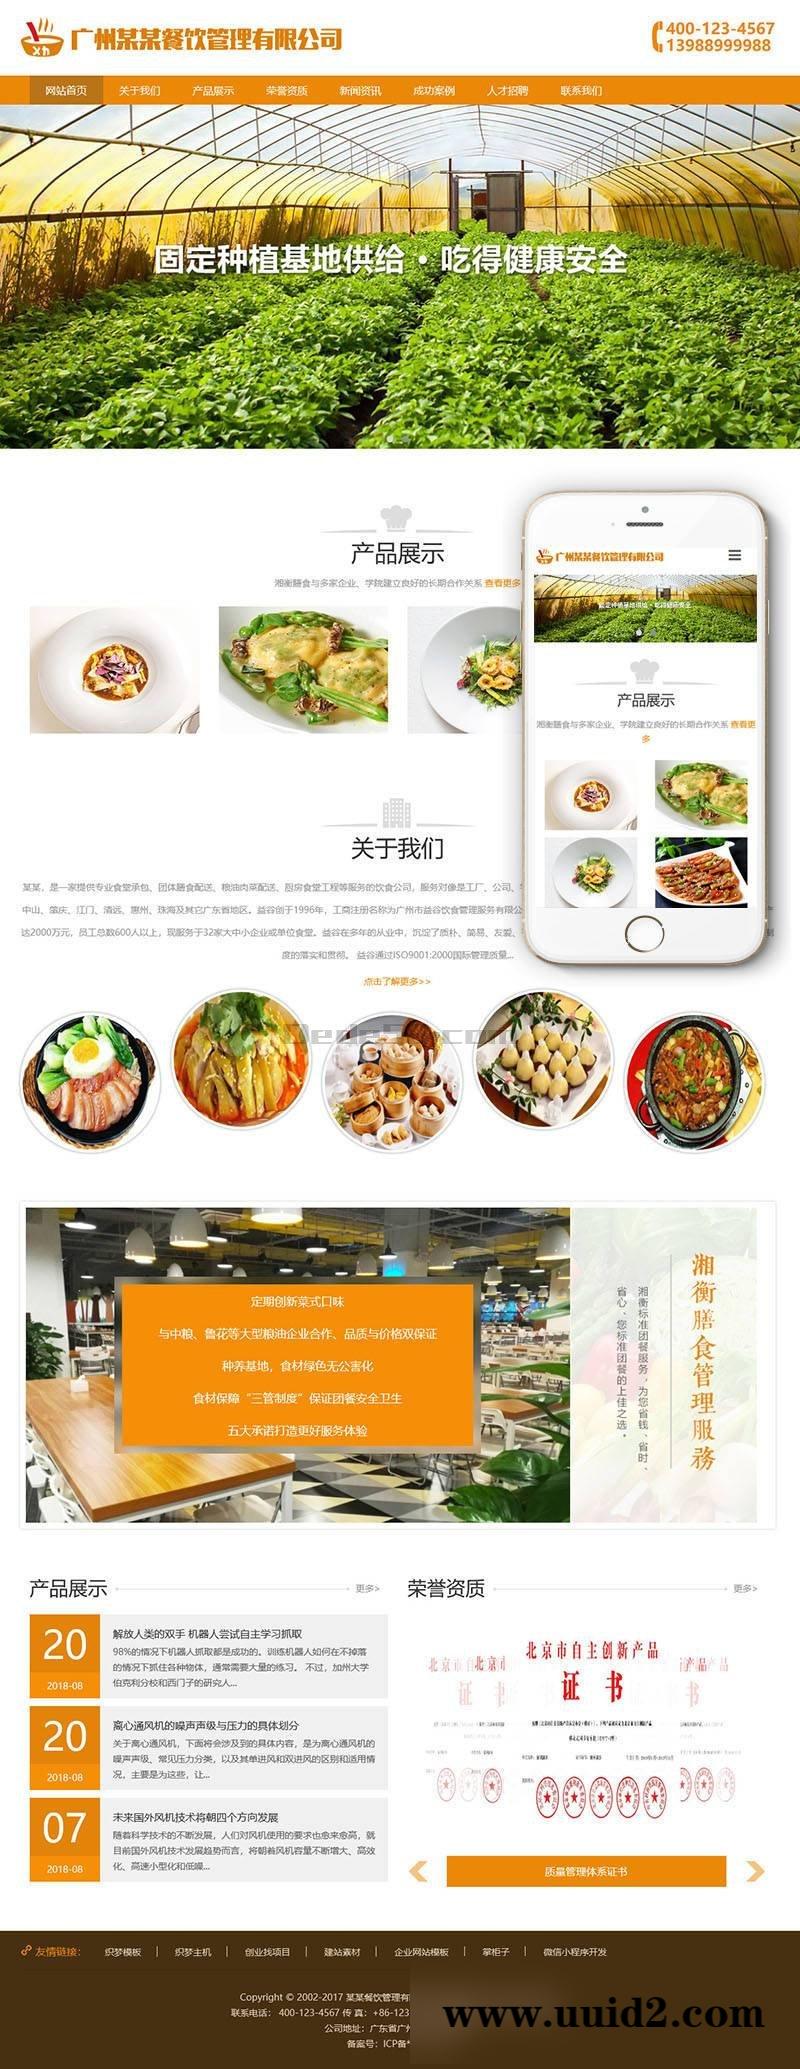 响应式膳食餐饮管理类织梦模板(自适应手机端)+利于SEO优化